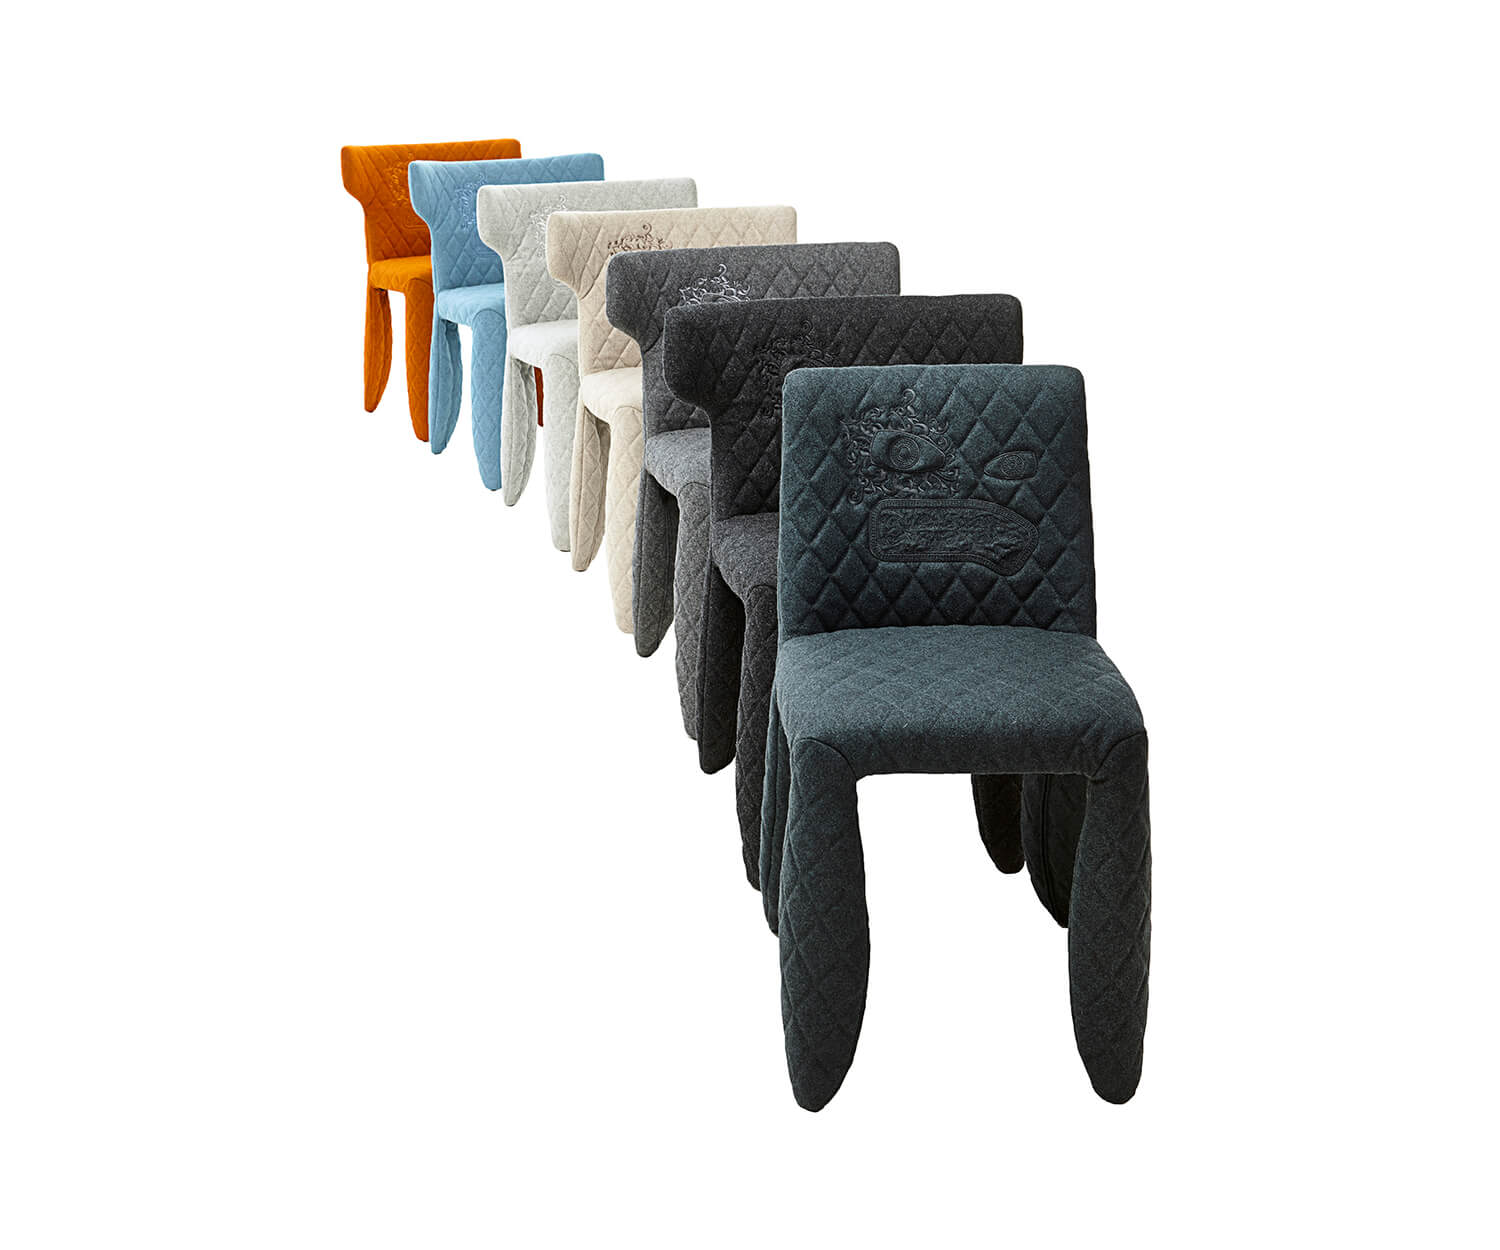 Moooi Monster Modern Chair by Marcel Wanders